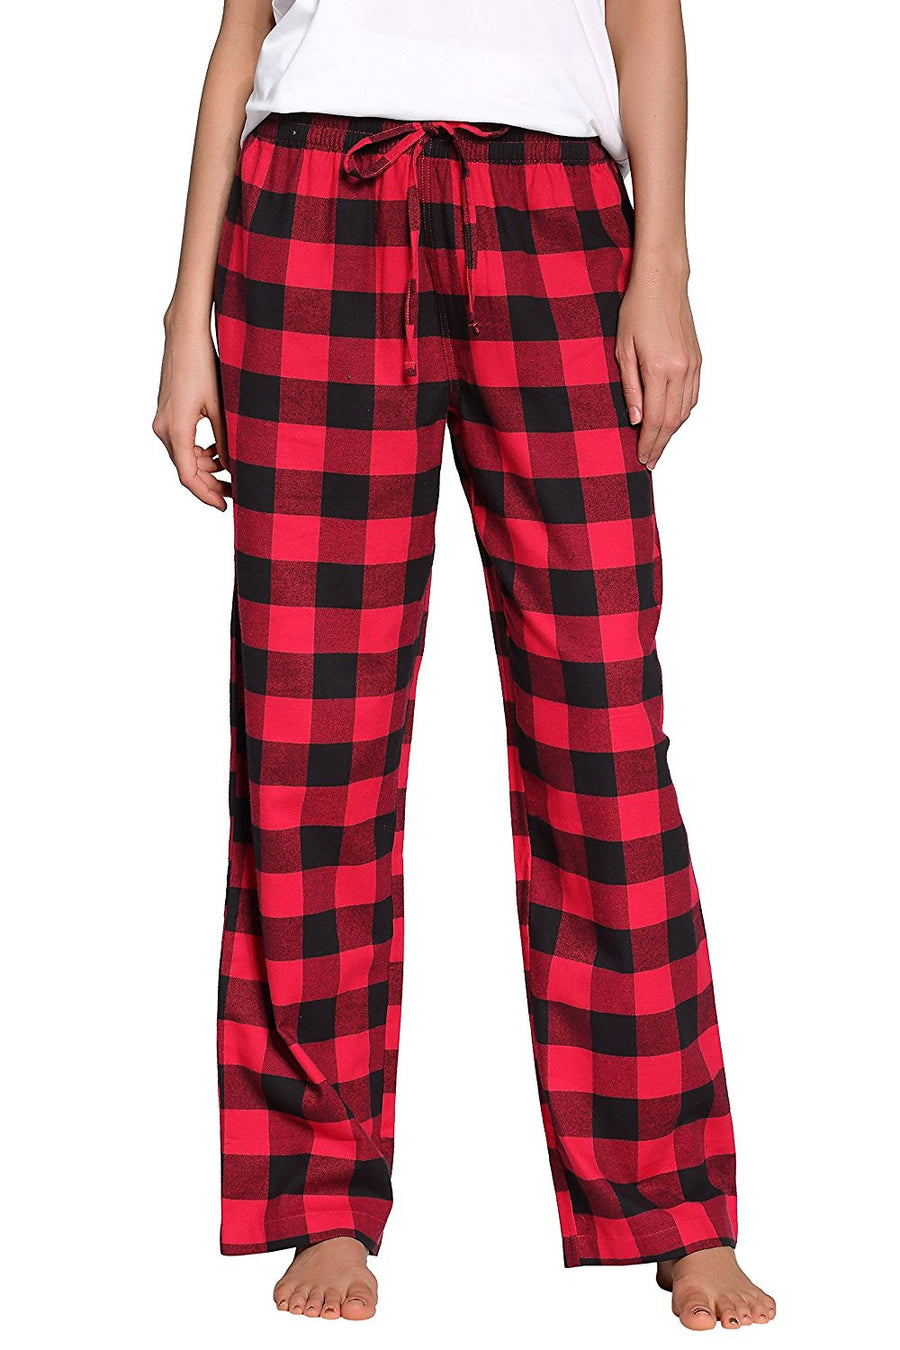 CYZ Women's 100% Cotton Super Soft Flannel Plaid Pajama/Louge Pants